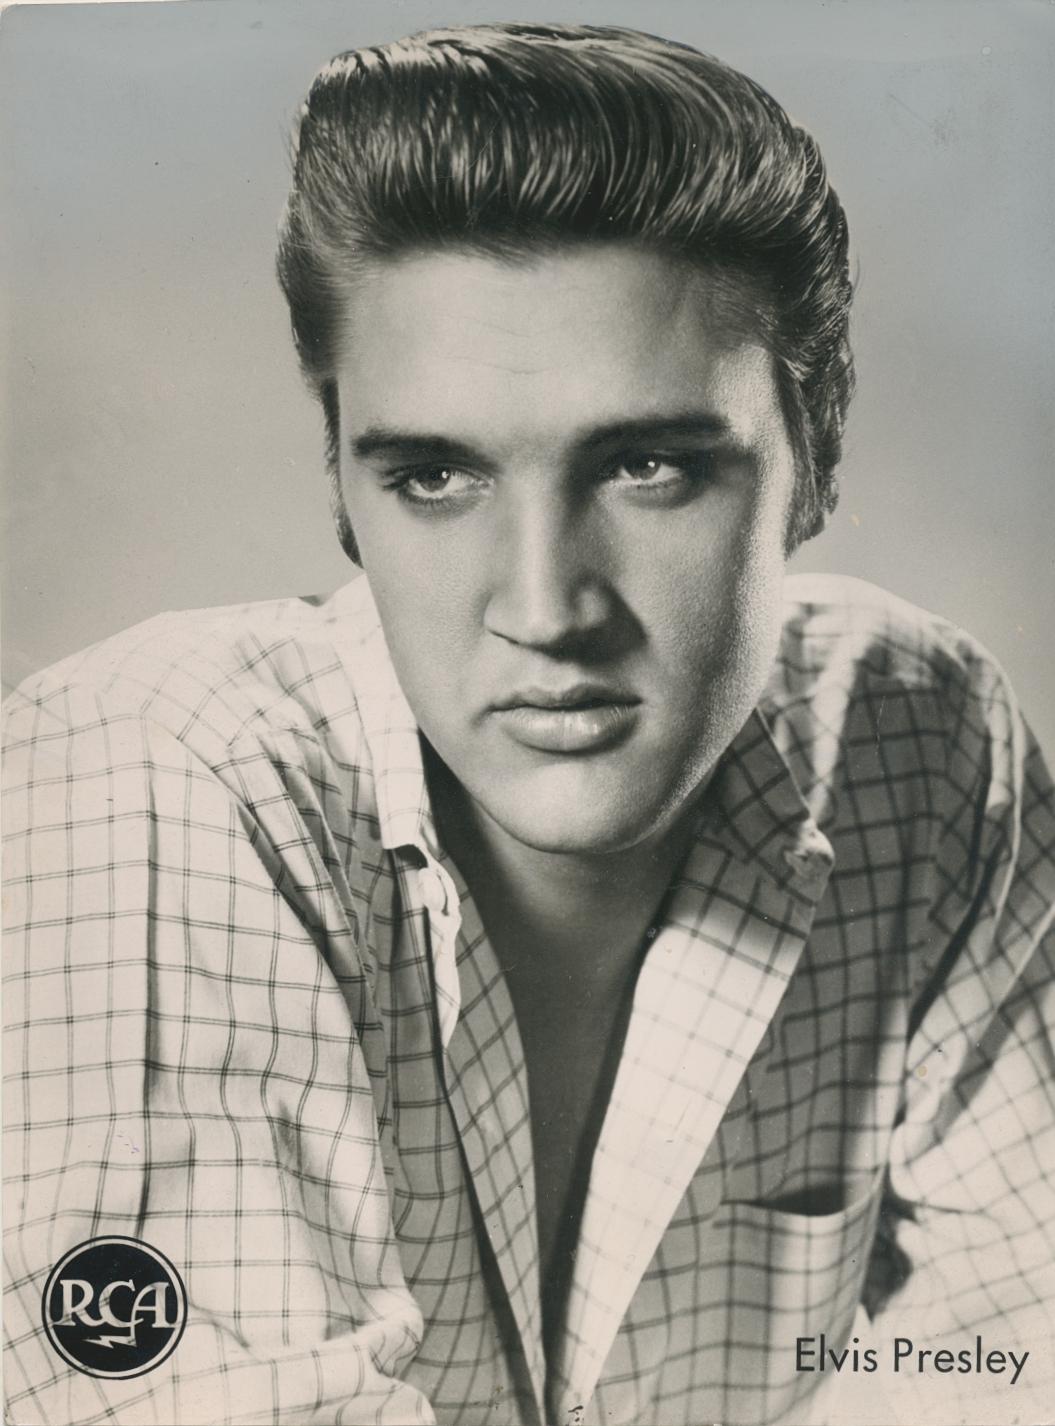 Unknown Color Photograph - Elvis Presley, portrait